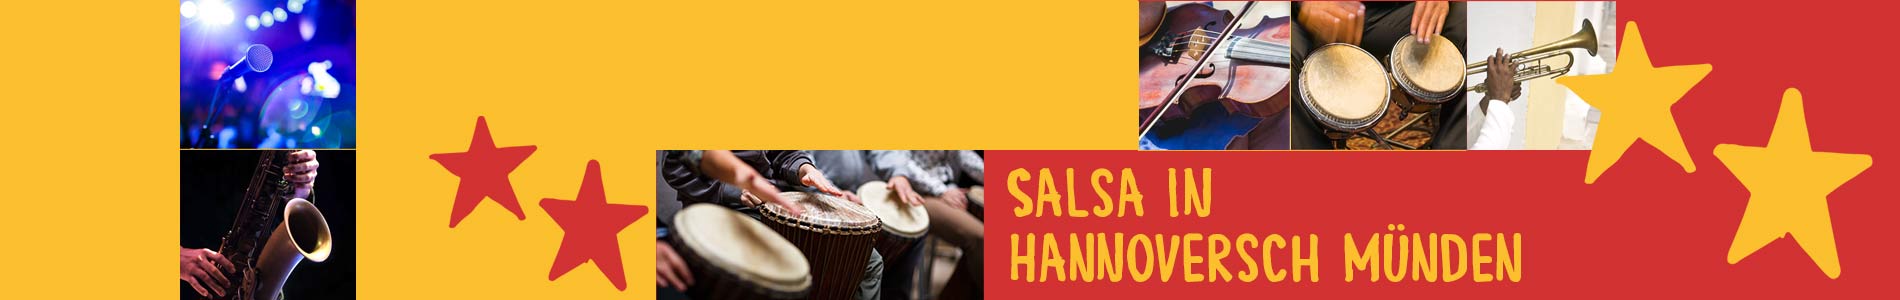 Salsa in Hannoversch Münden – Salsa lernen und tanzen, Tanzkurse, Partys, Veranstaltungen